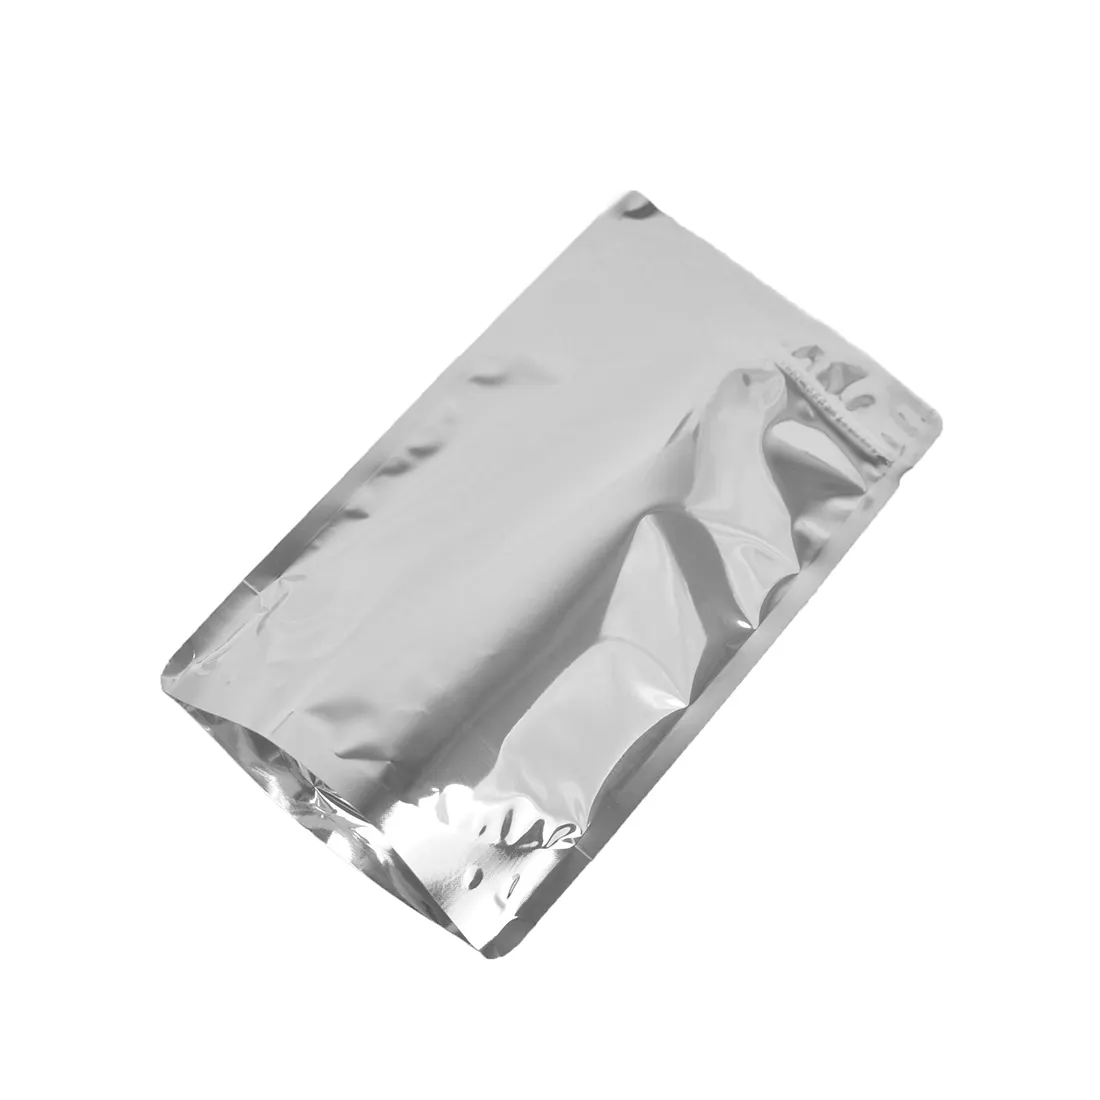 Bustina d'argento/sacchetto dell'imballaggio della chiusura lampo del sacchetto della serratura della chiusura lampo del foglio di alluminio argento 1kg 2kg 250g 500g